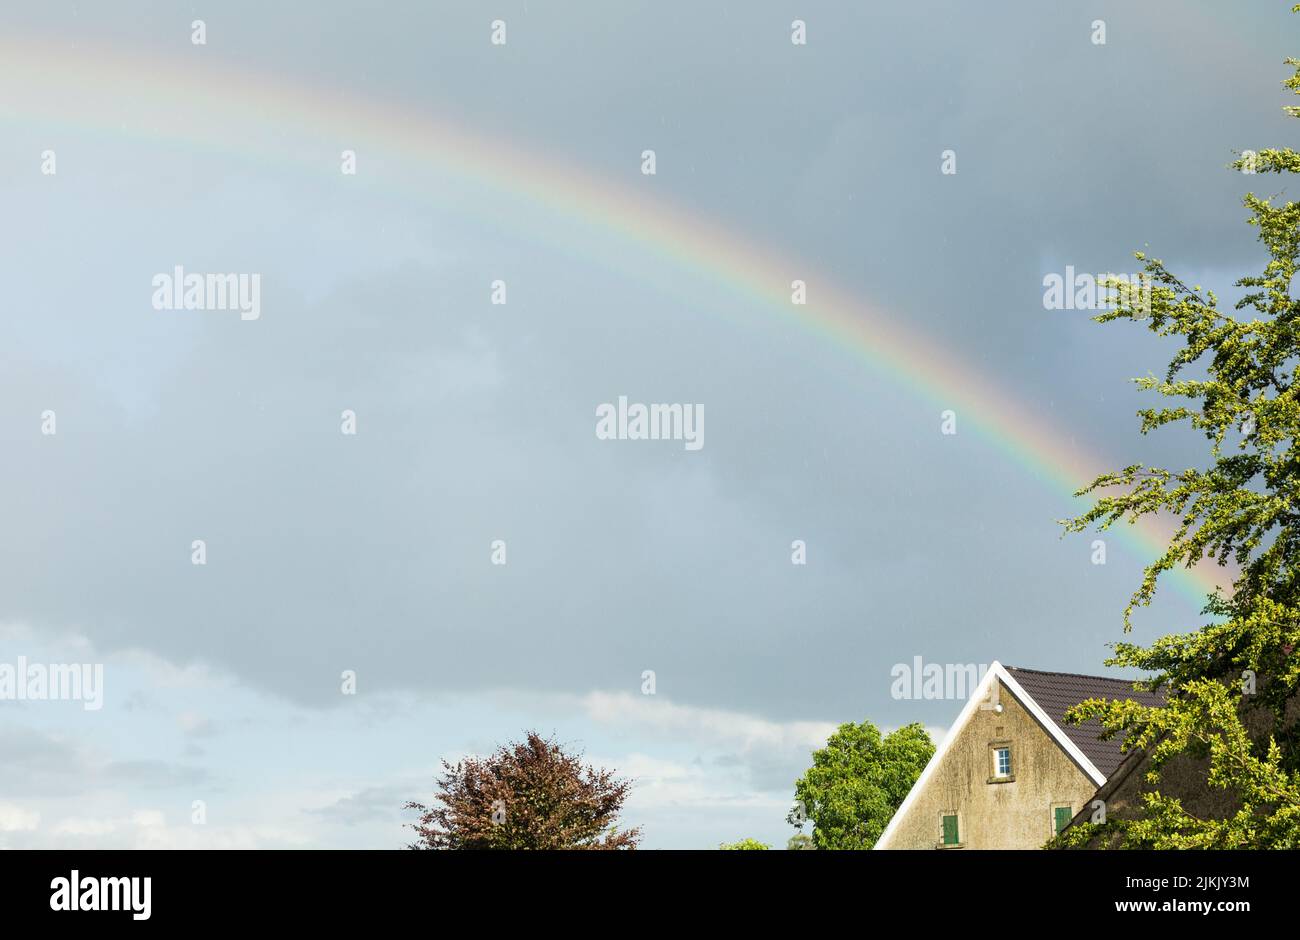 Farbenfroher Regenbogen am Himmel mit Haus Stockfoto